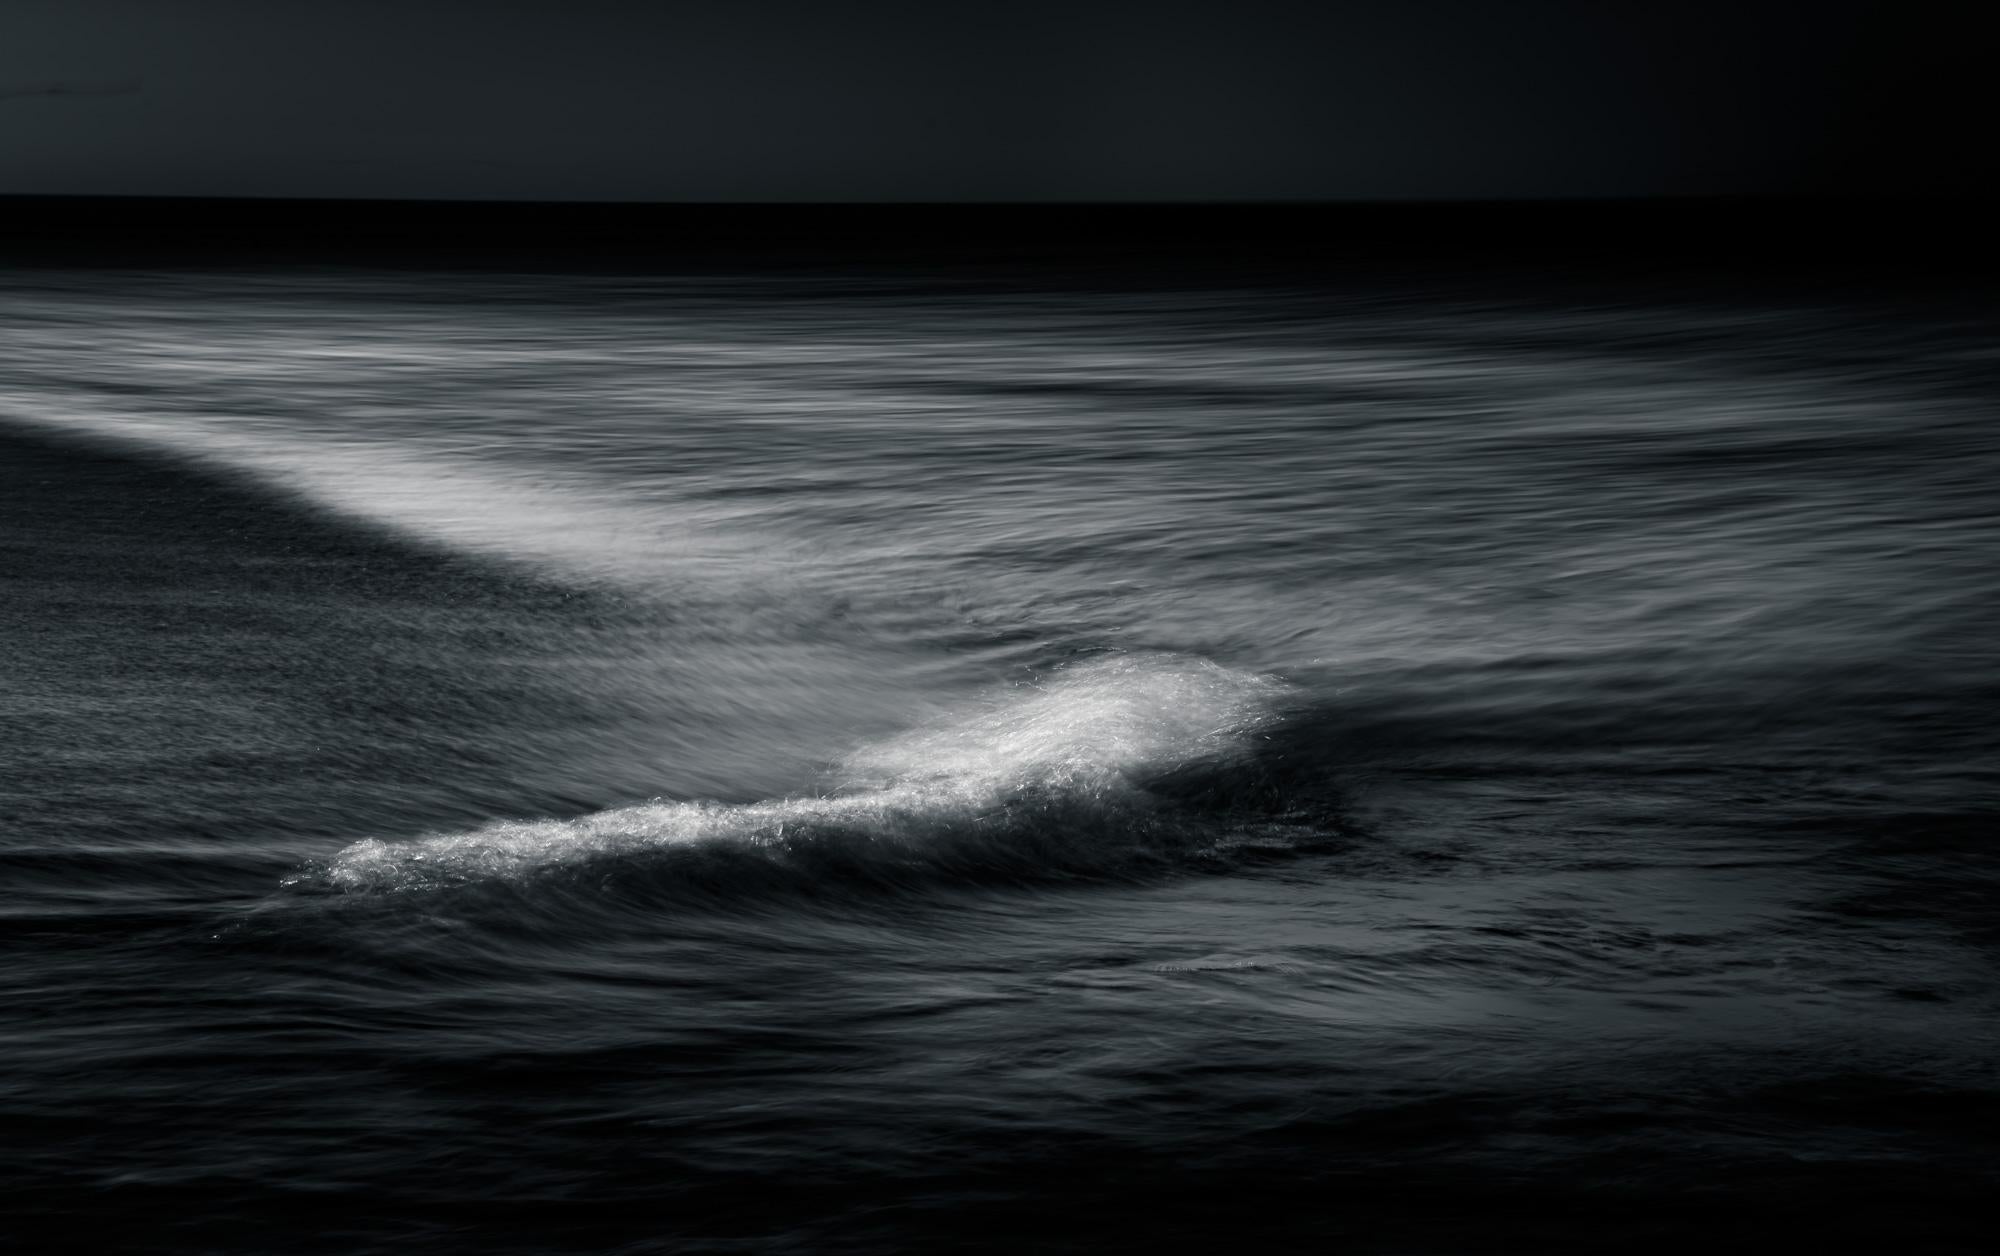 Landscape Photograph Howard Lewis - Waves - Photographie éthérée océanique en noir et blanc n°85